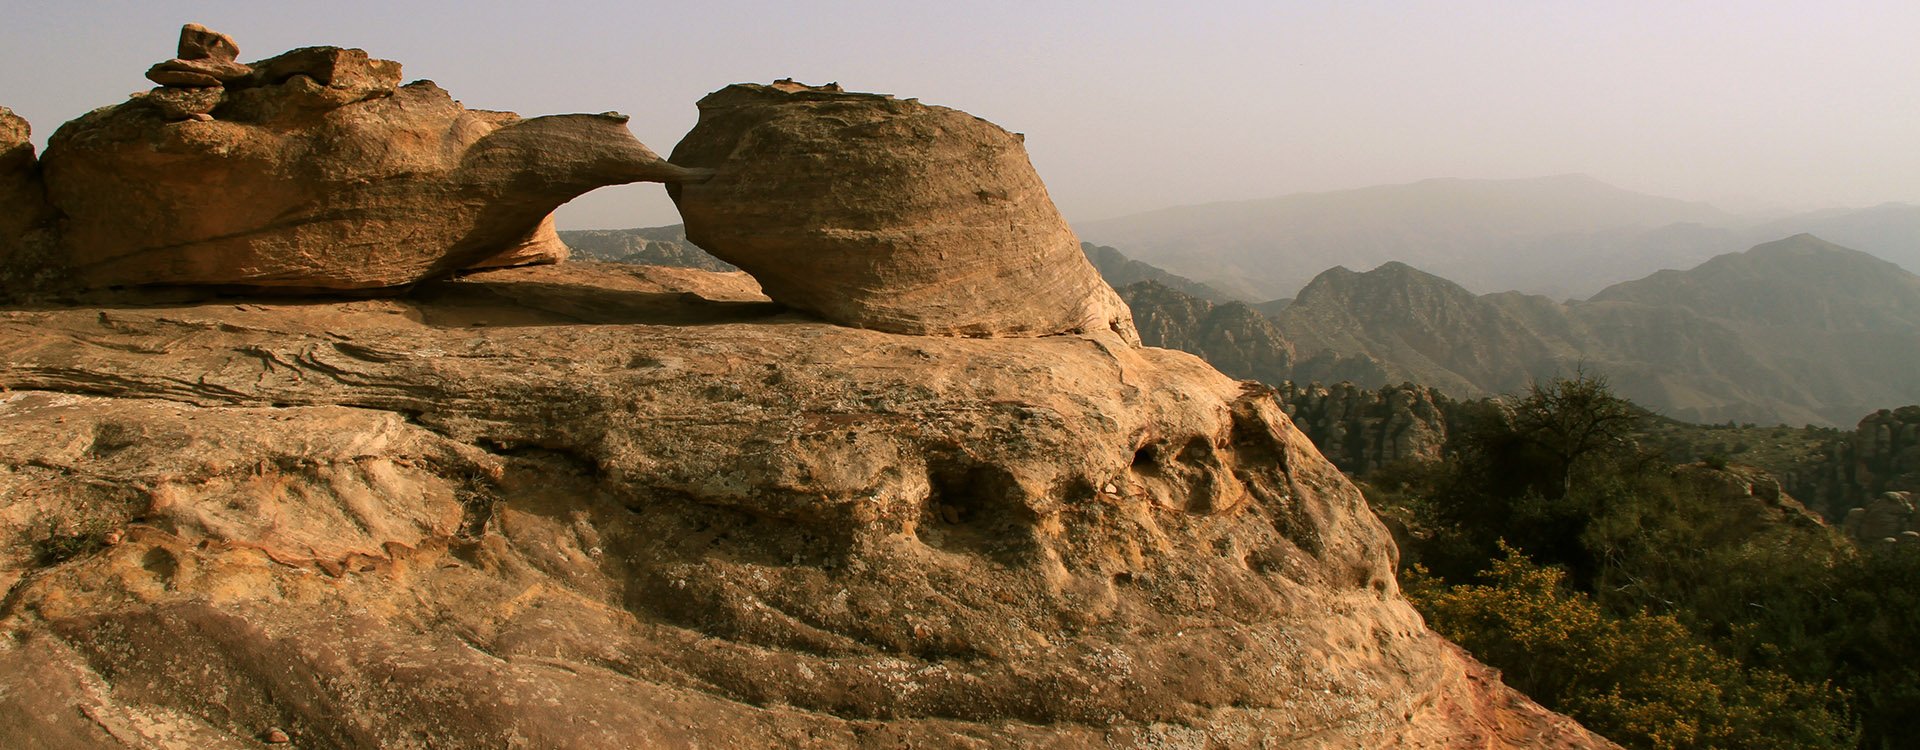 Nice shaped Rock at Dana Nature Reserve in southern Jordan